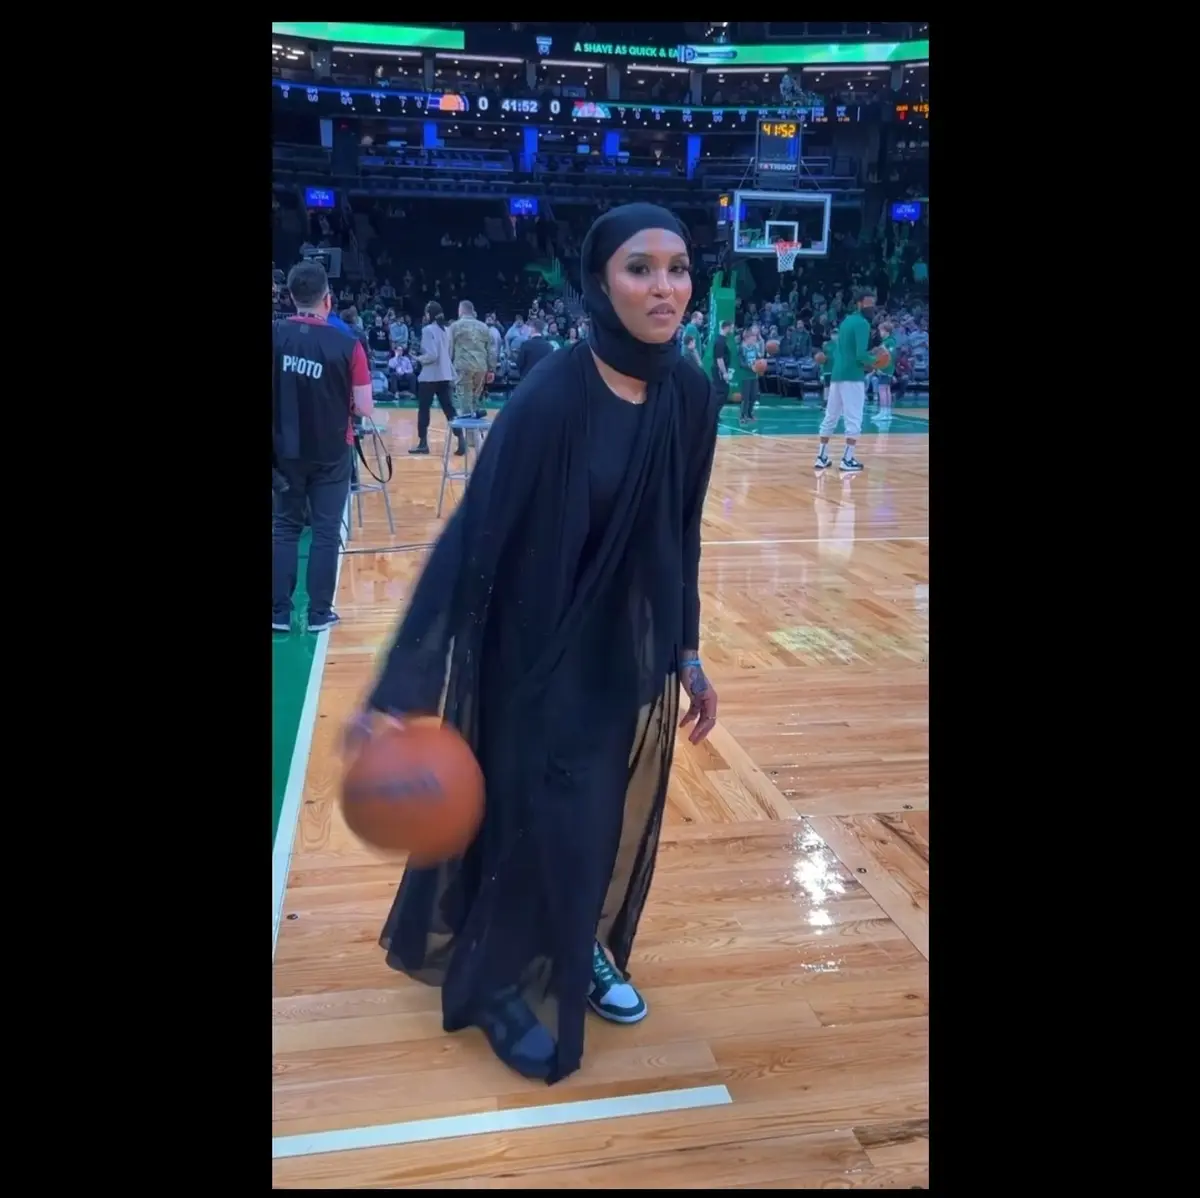 بازدید میلیونی از بسکتبال بازی کردن با حجاب کامل+ویدیو